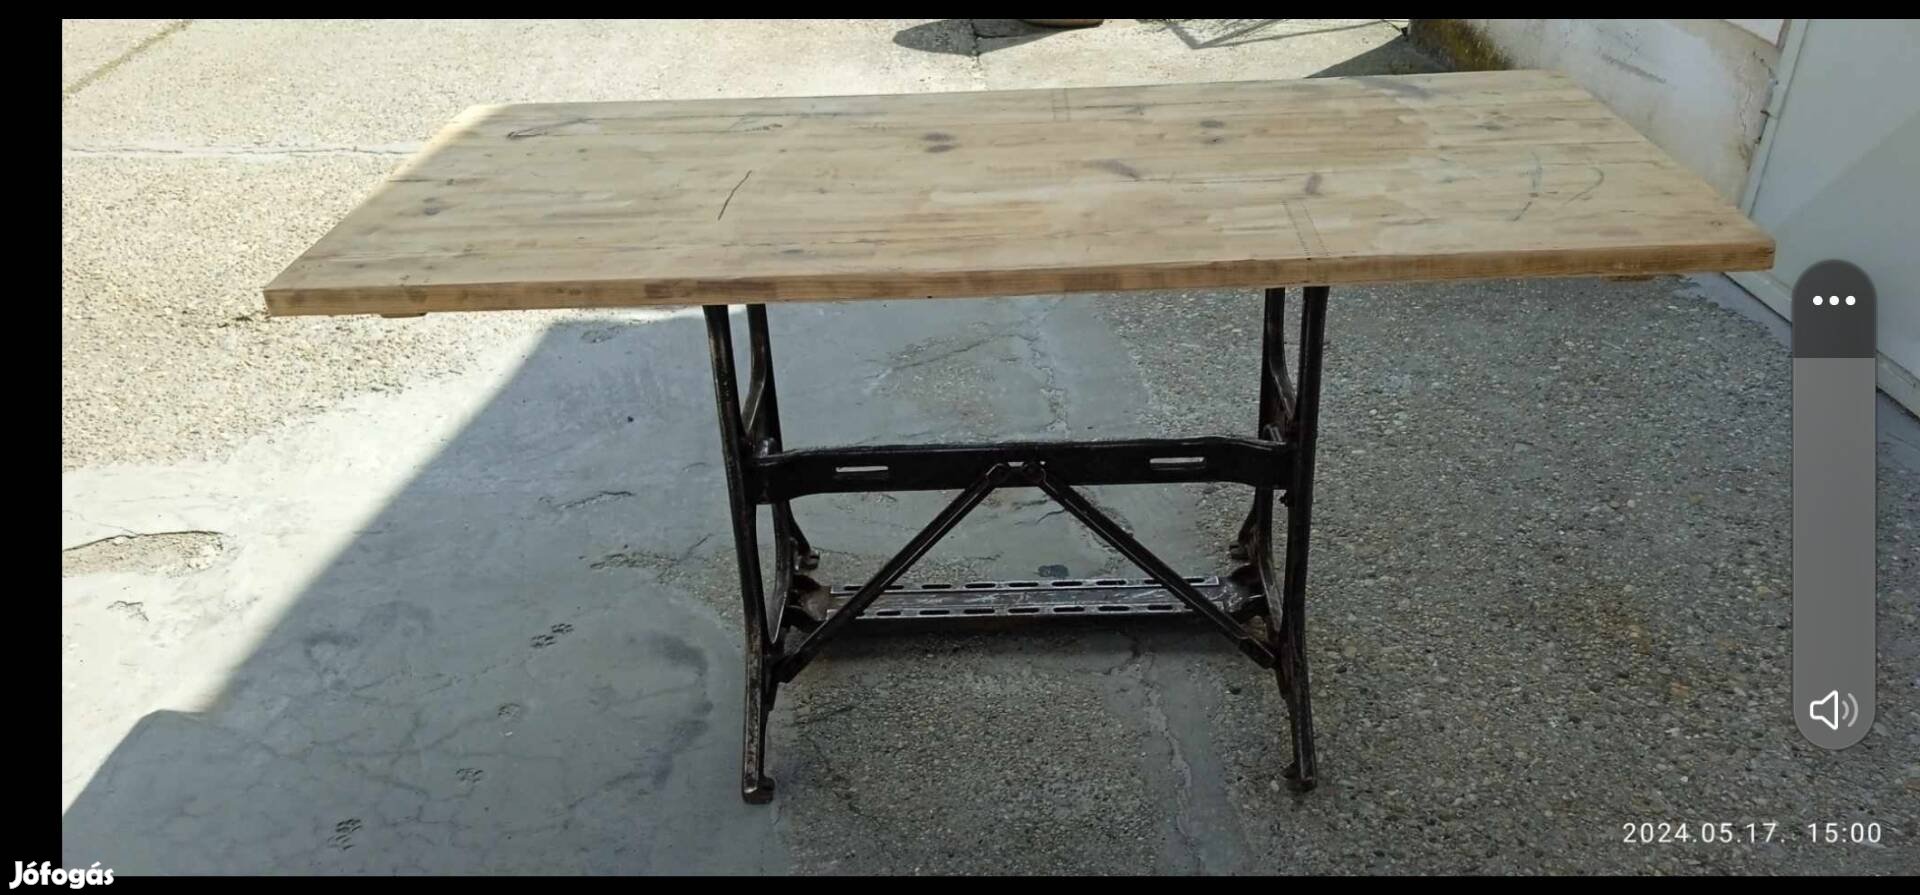 Kreált loft asztal industrial dizájn nagy asztal 